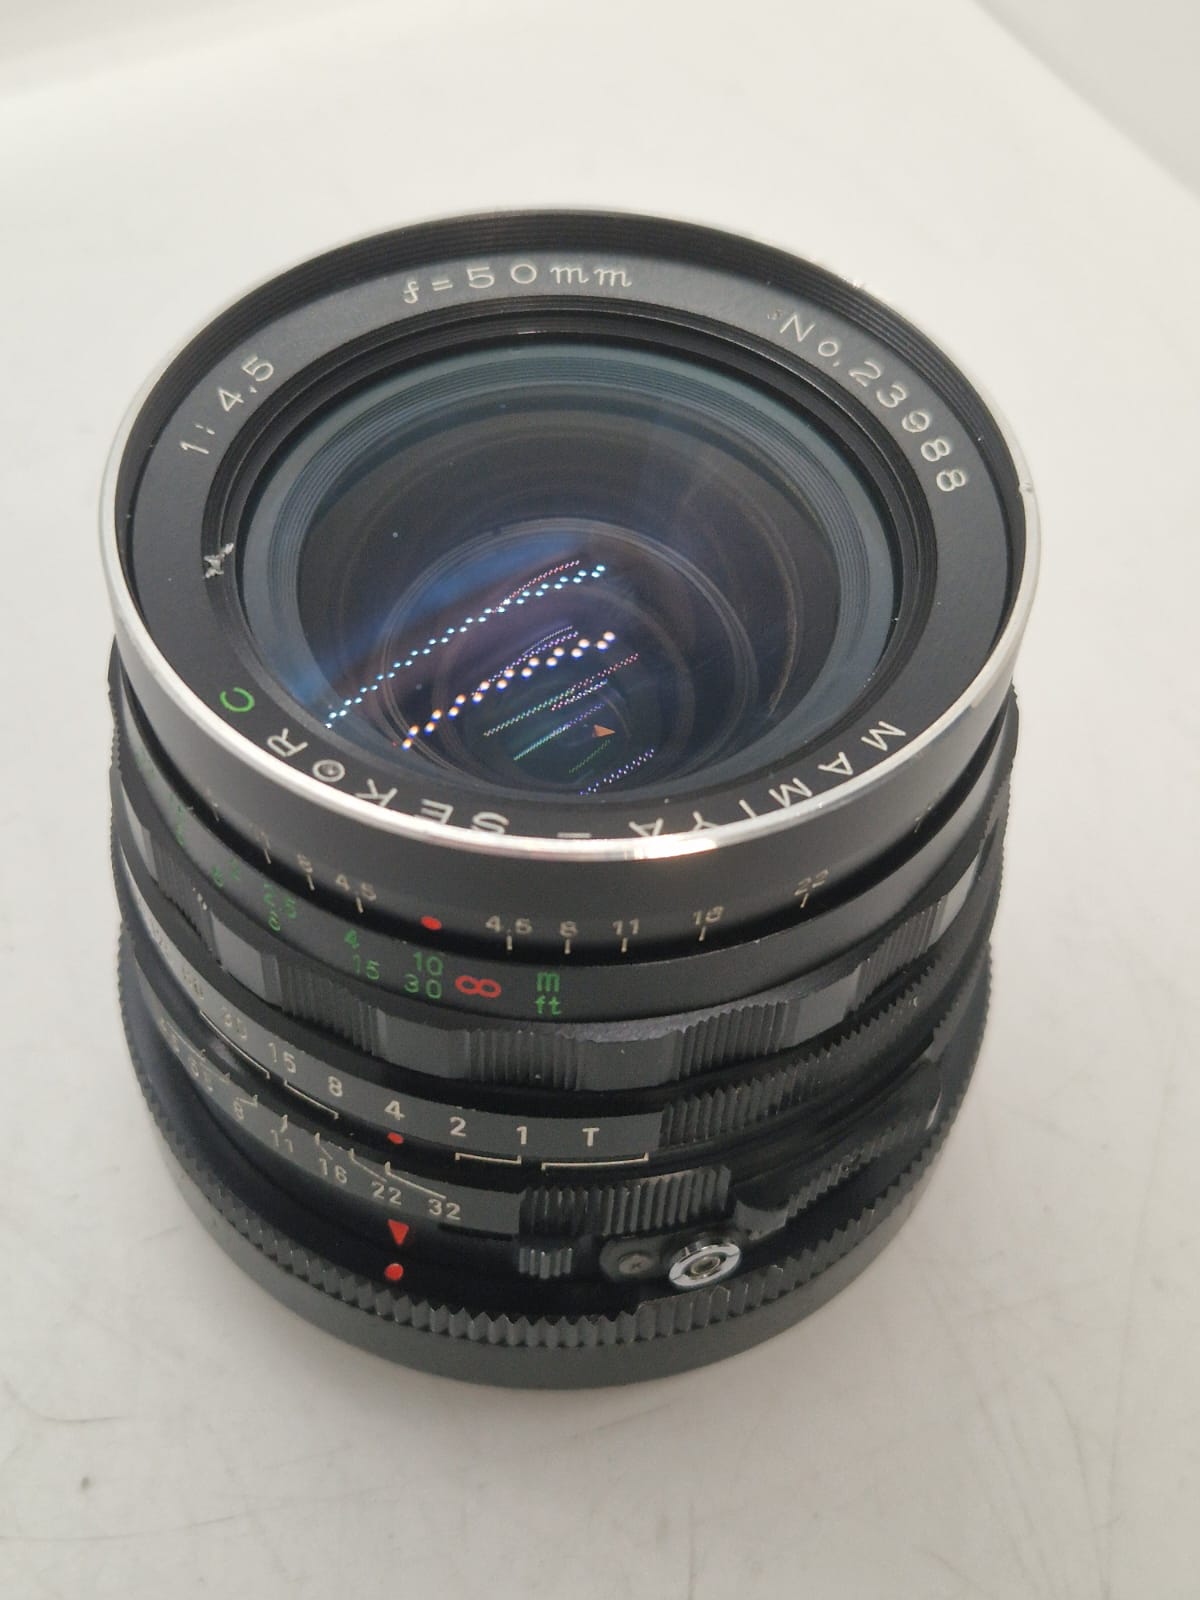 Mamiya Sekor 50mm 1:4.5 No.23988 Lens